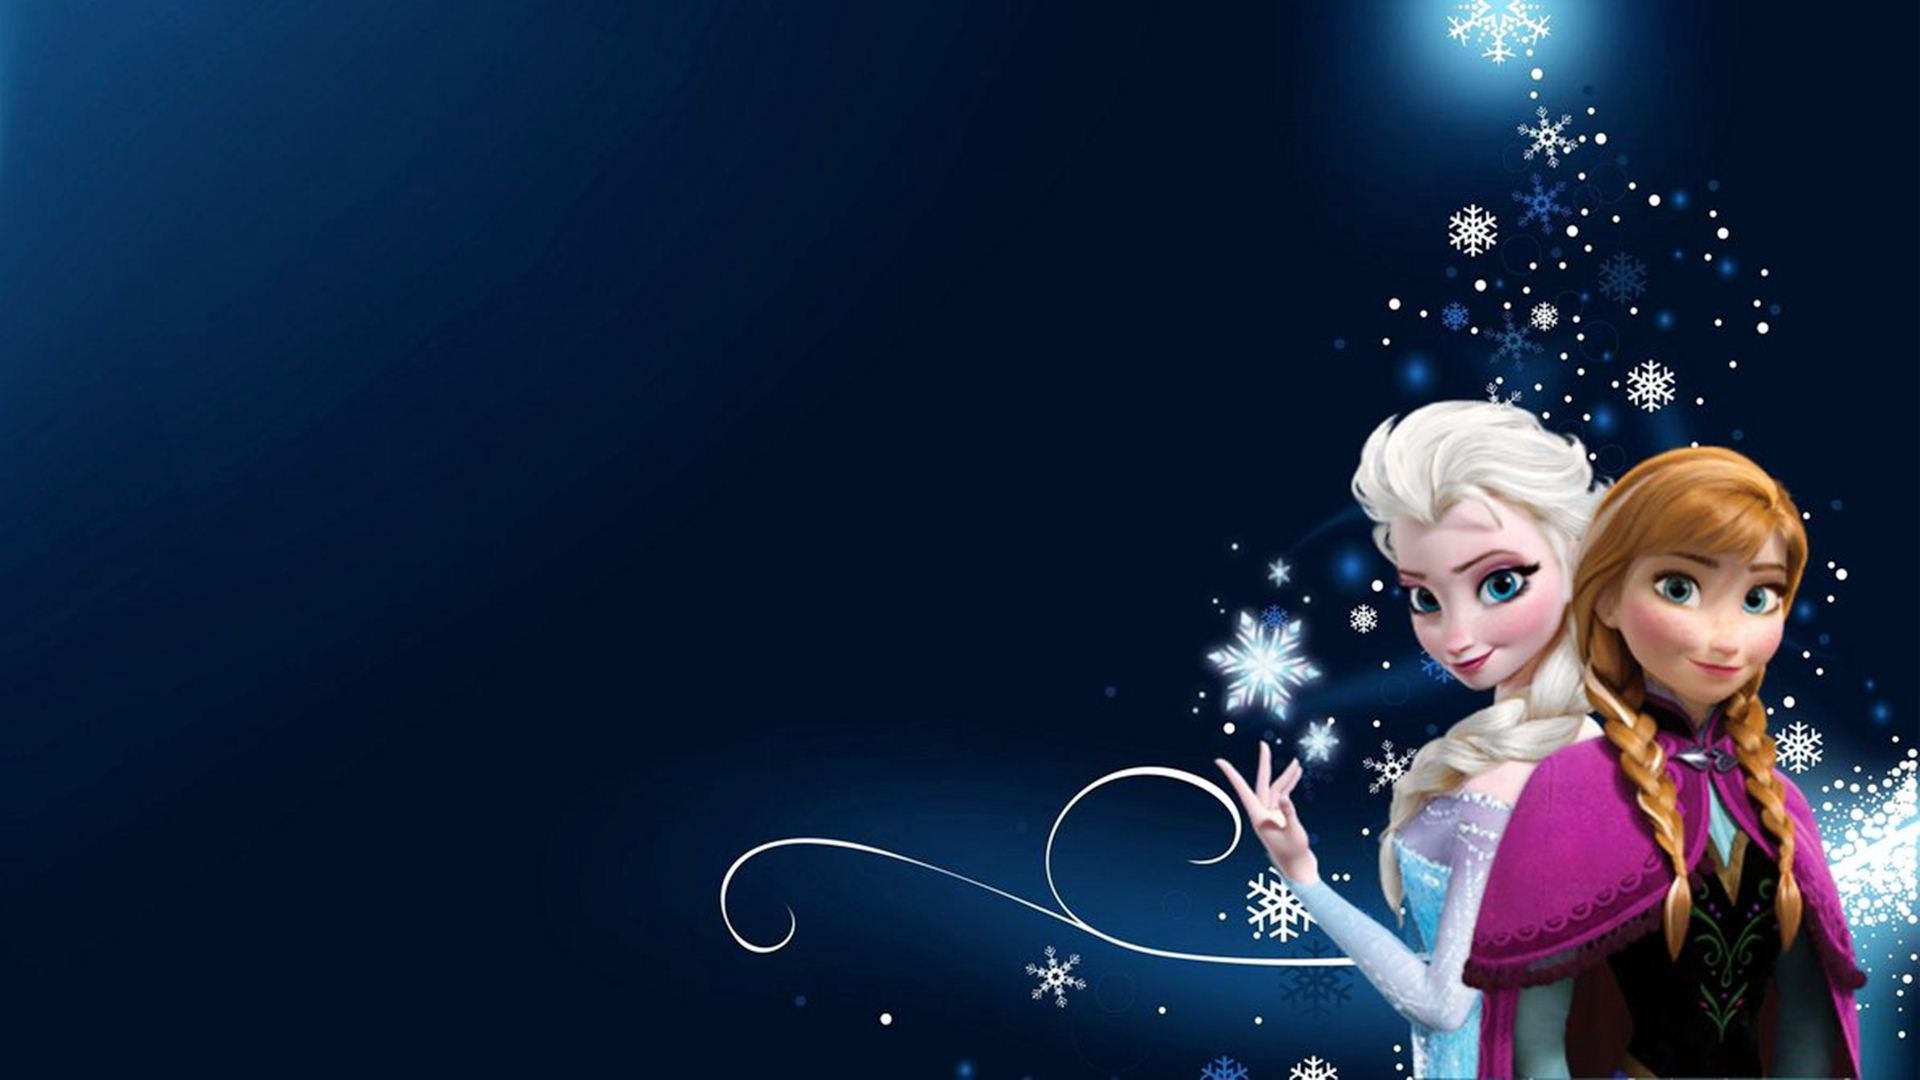 Disney Frozen Elsa and Anna wallpaper Frozen movie Olaf Princess Anna Princess  Elsa HD wallpaper  Wallpaper Flare